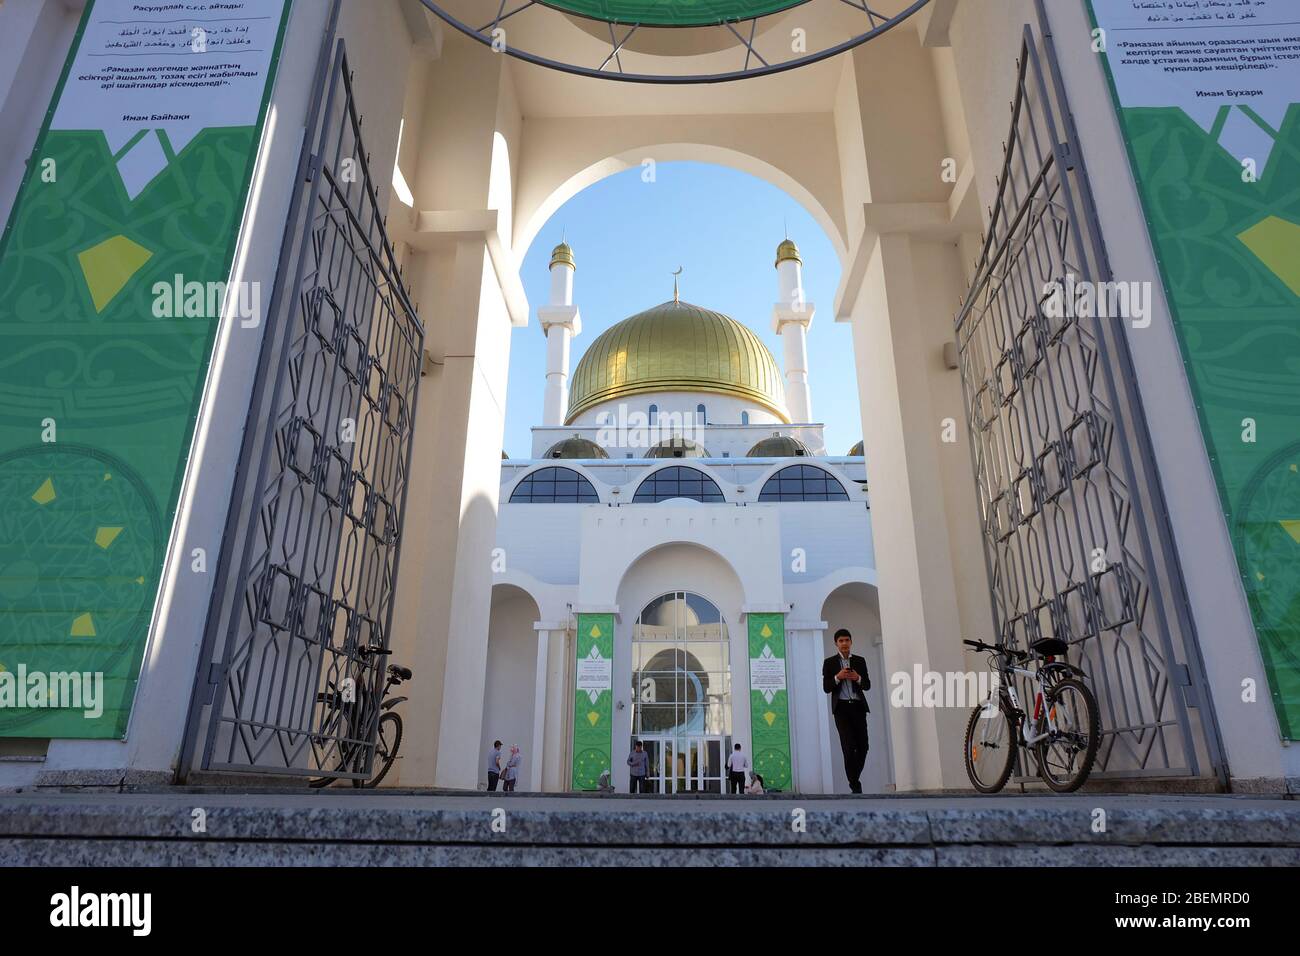 NUR-SULTAN, ASTANA, KAZAKHSTAN - 3 JUIN 2015 : entrée à la mosquée blanche de Nur Astana avec dôme doré. Deux bycicules des deux côtés du mur Banque D'Images